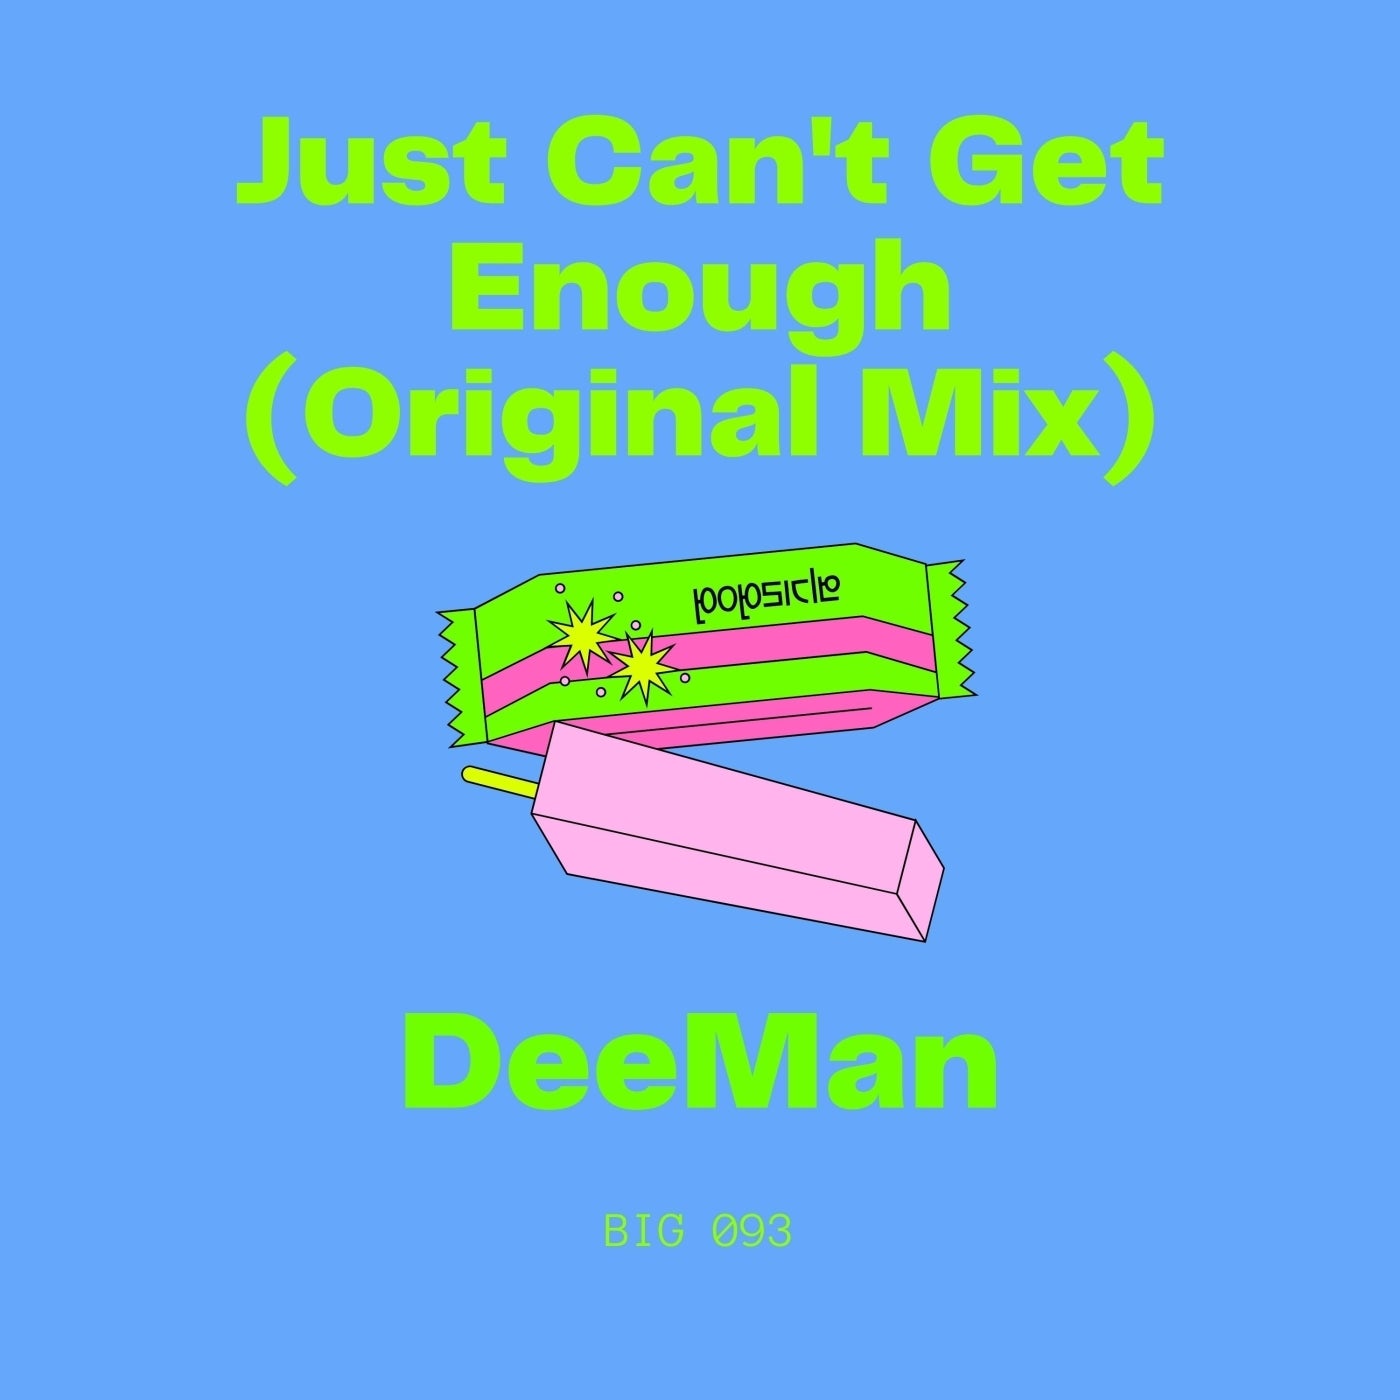 D.e.eMan - Just Can't Get Enough (Original Mix)